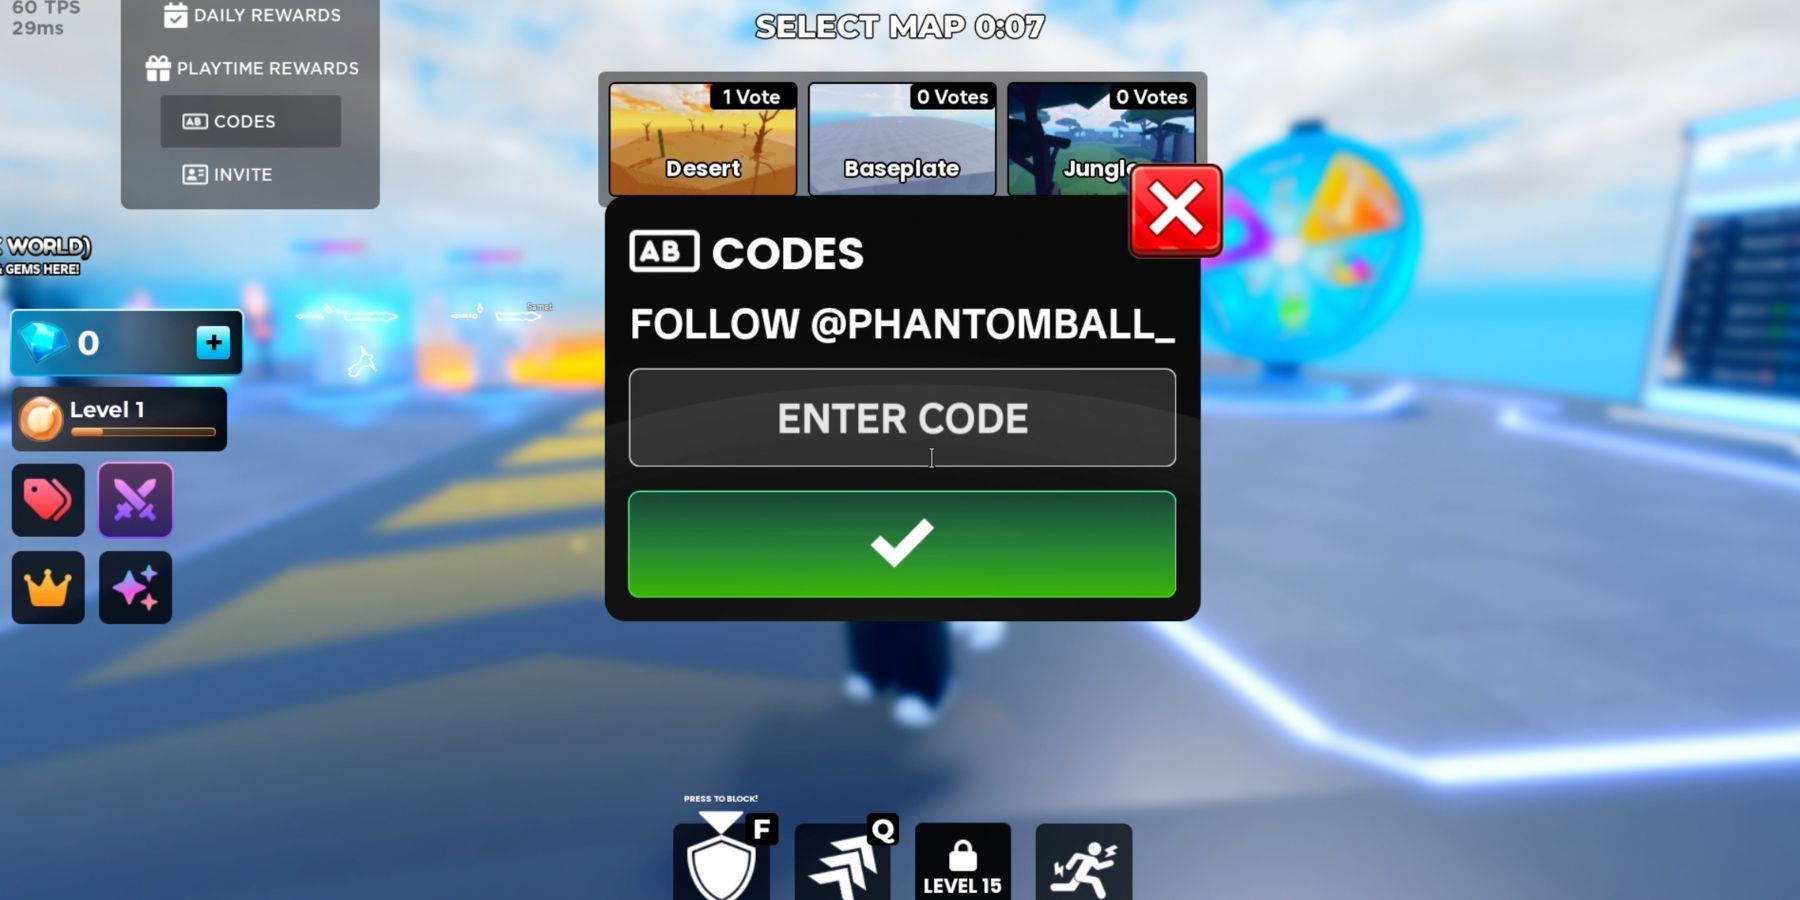 Phantom Ball the codes tab